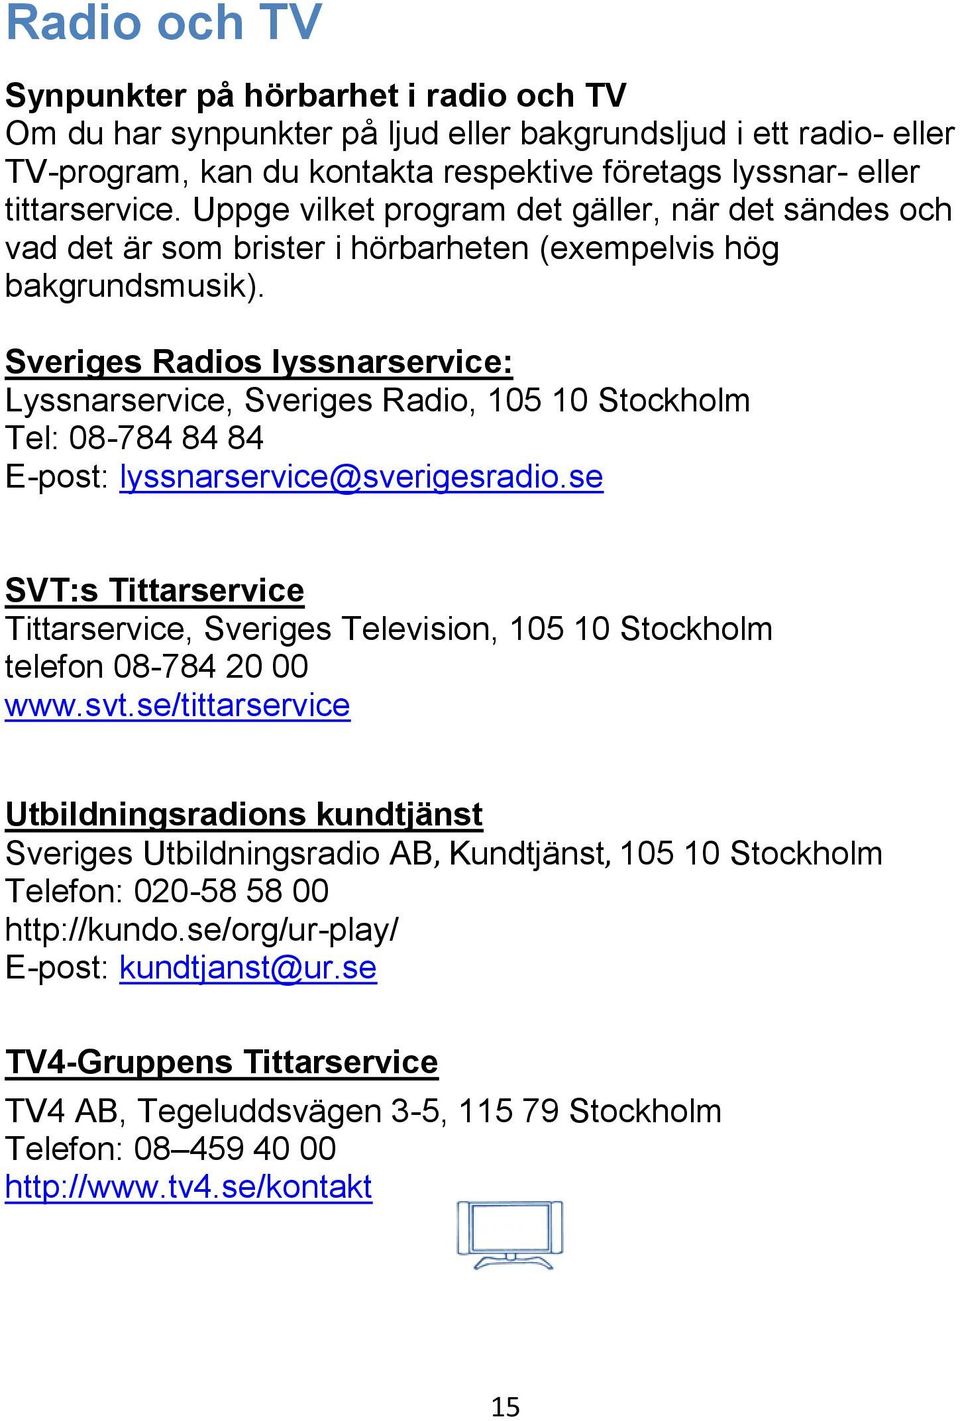 Sveriges Radios lyssnarservice: Lyssnarservice, Sveriges Radio, 105 10 Stockholm Tel: 08-784 84 84 E-post: lyssnarservice@sverigesradio.